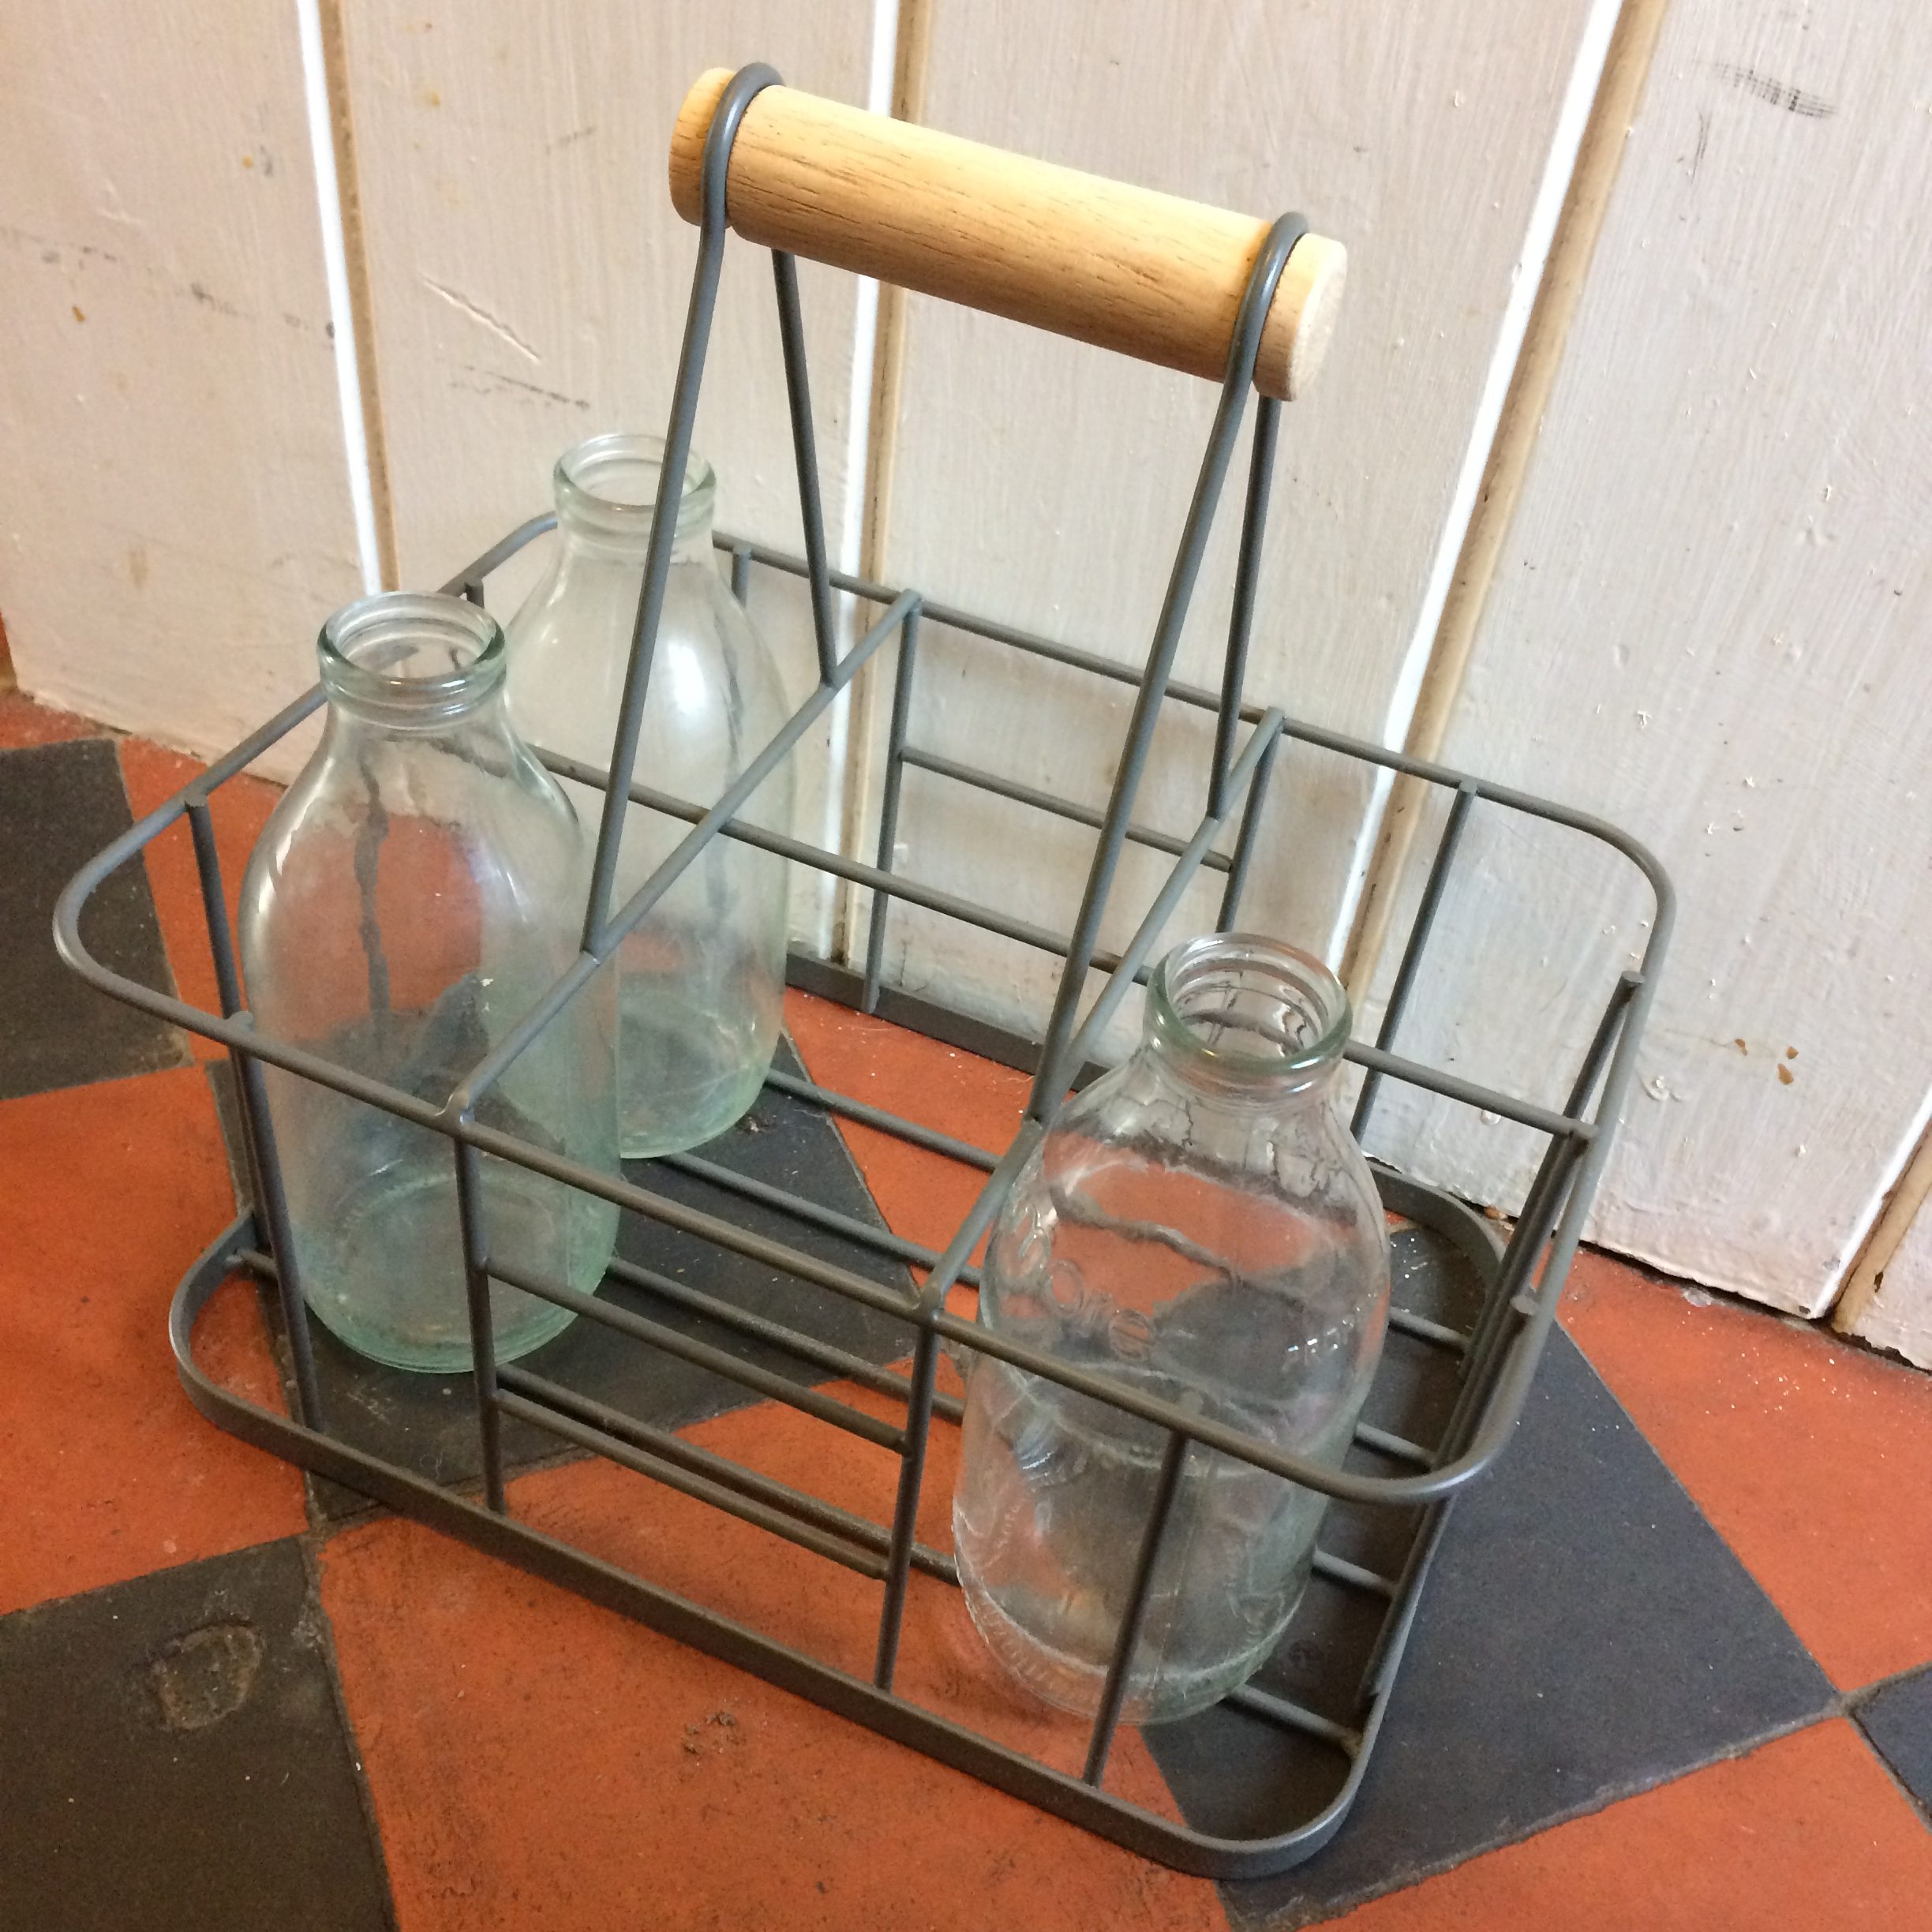 Empty glass milk bottles in a wire rack